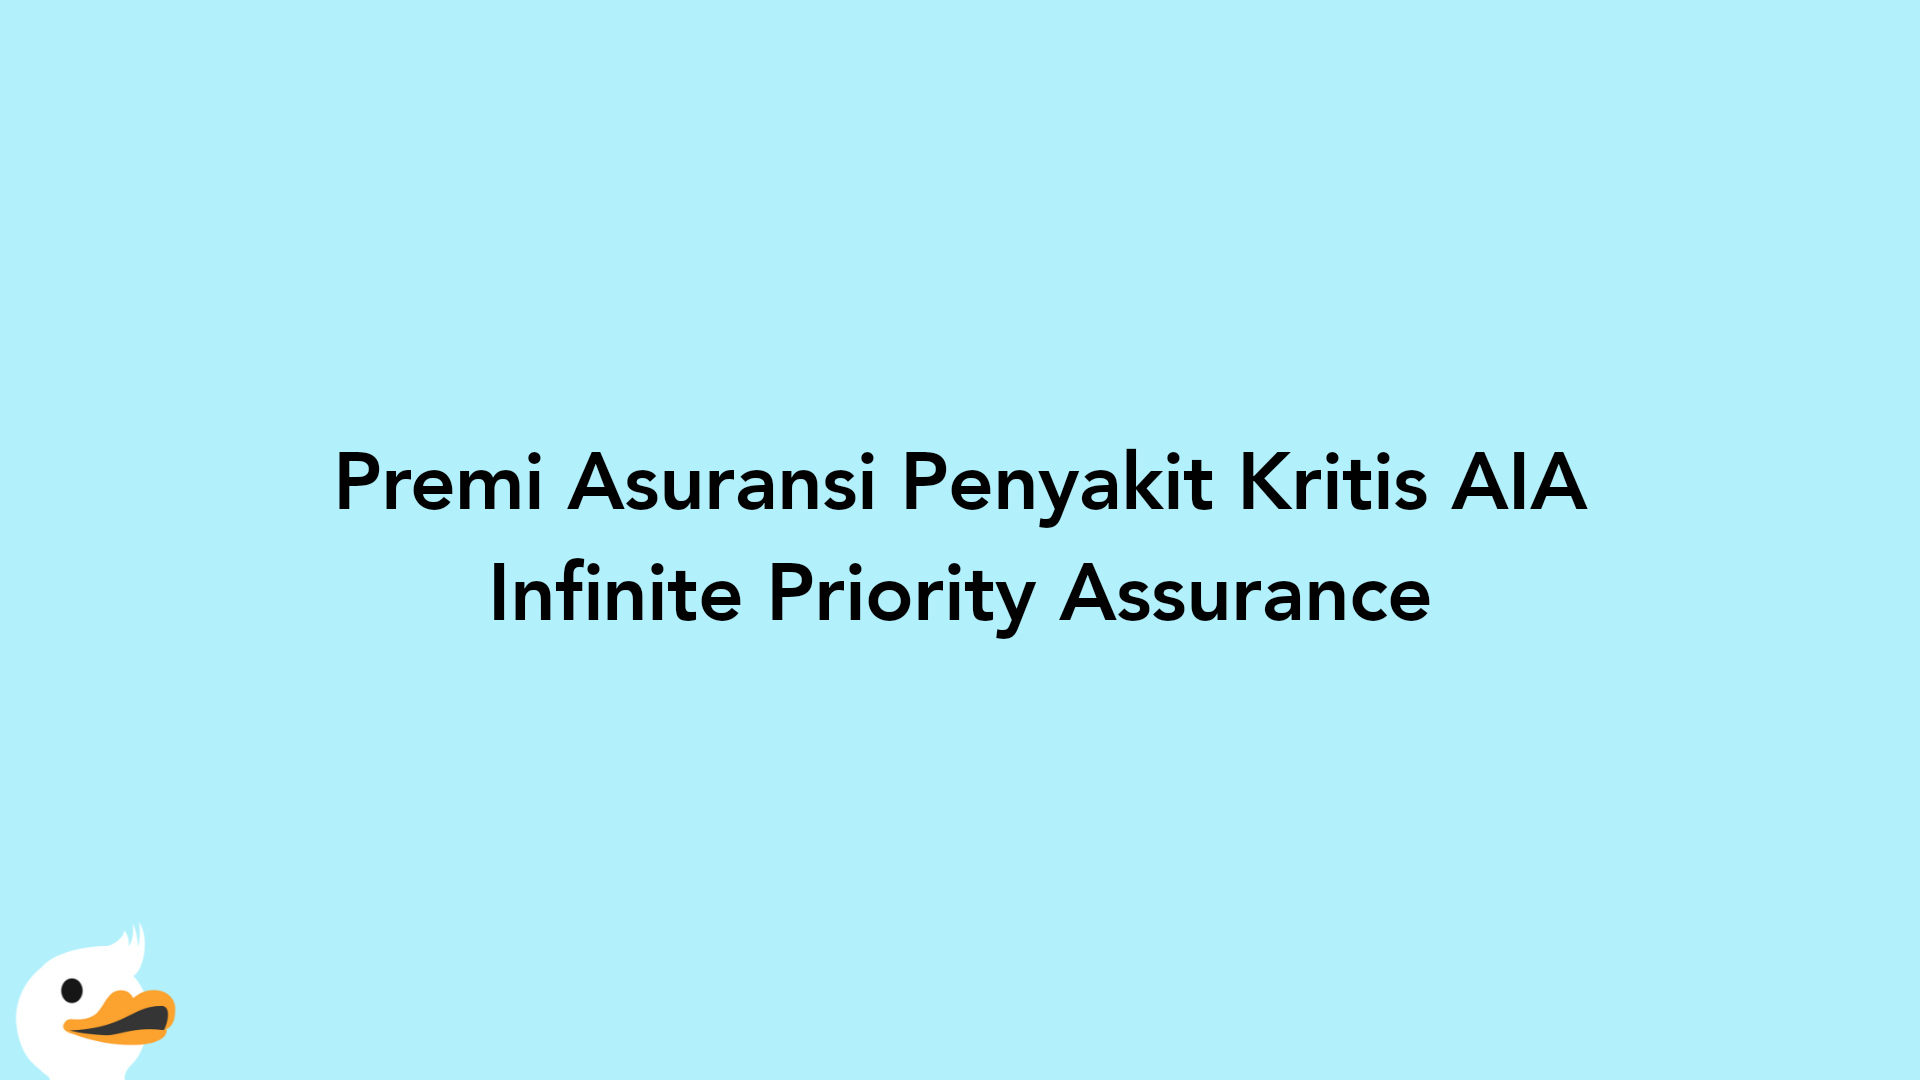 Premi Asuransi Penyakit Kritis AIA Infinite Priority Assurance